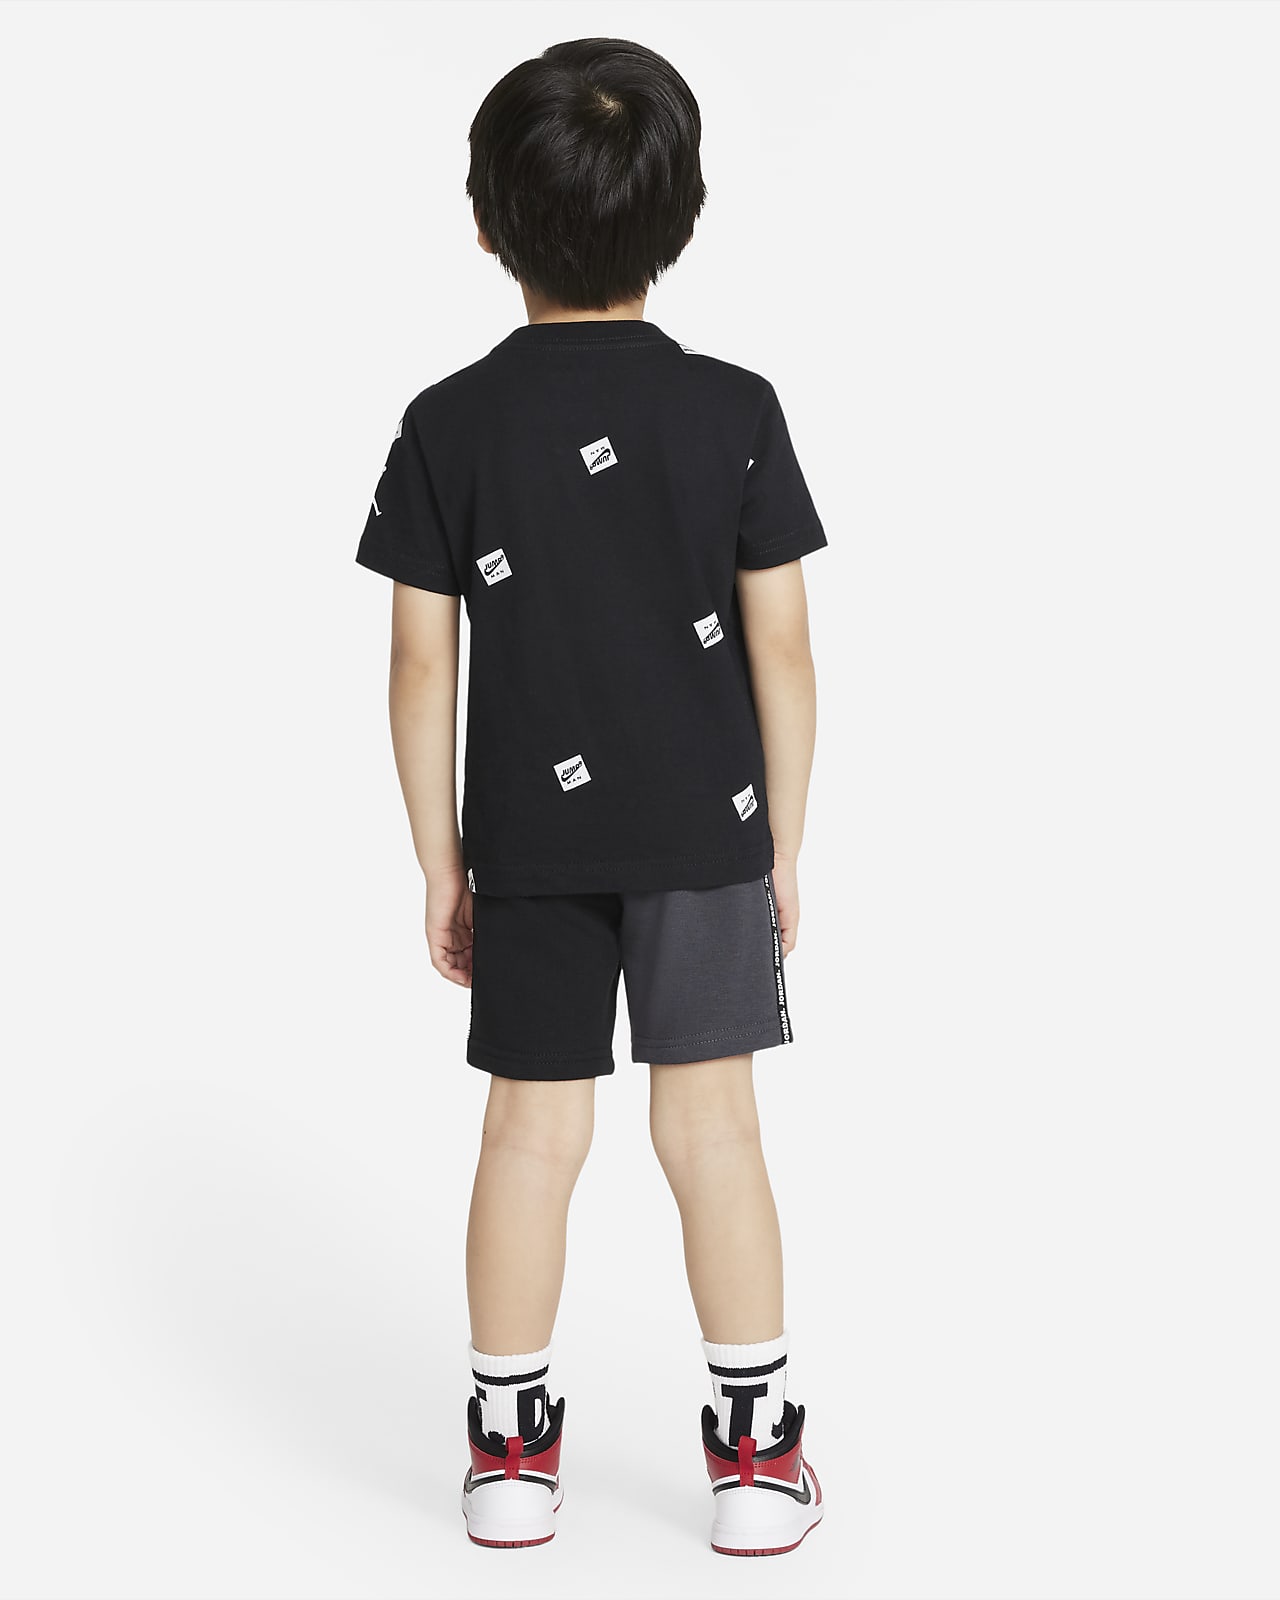 Jordan Jumpman Toddler T-Shirt and 